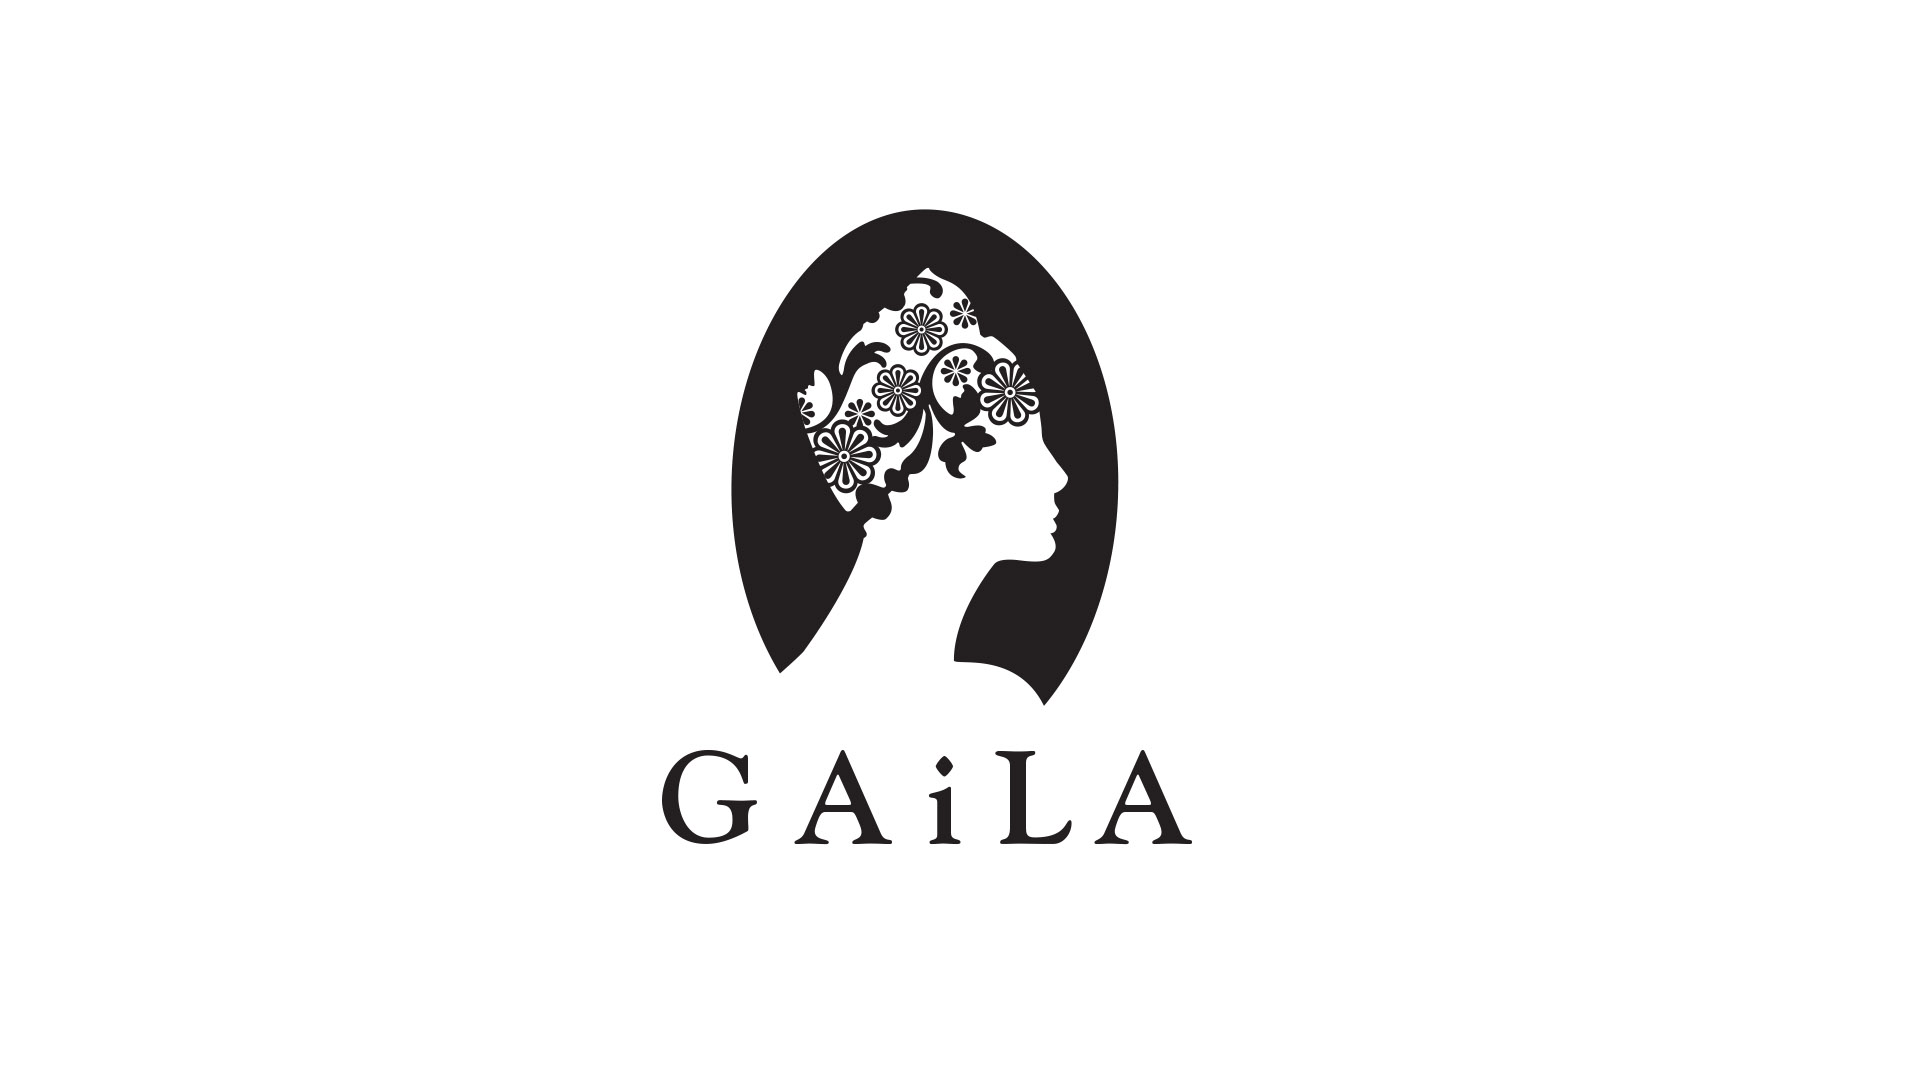 gaila black logo on white